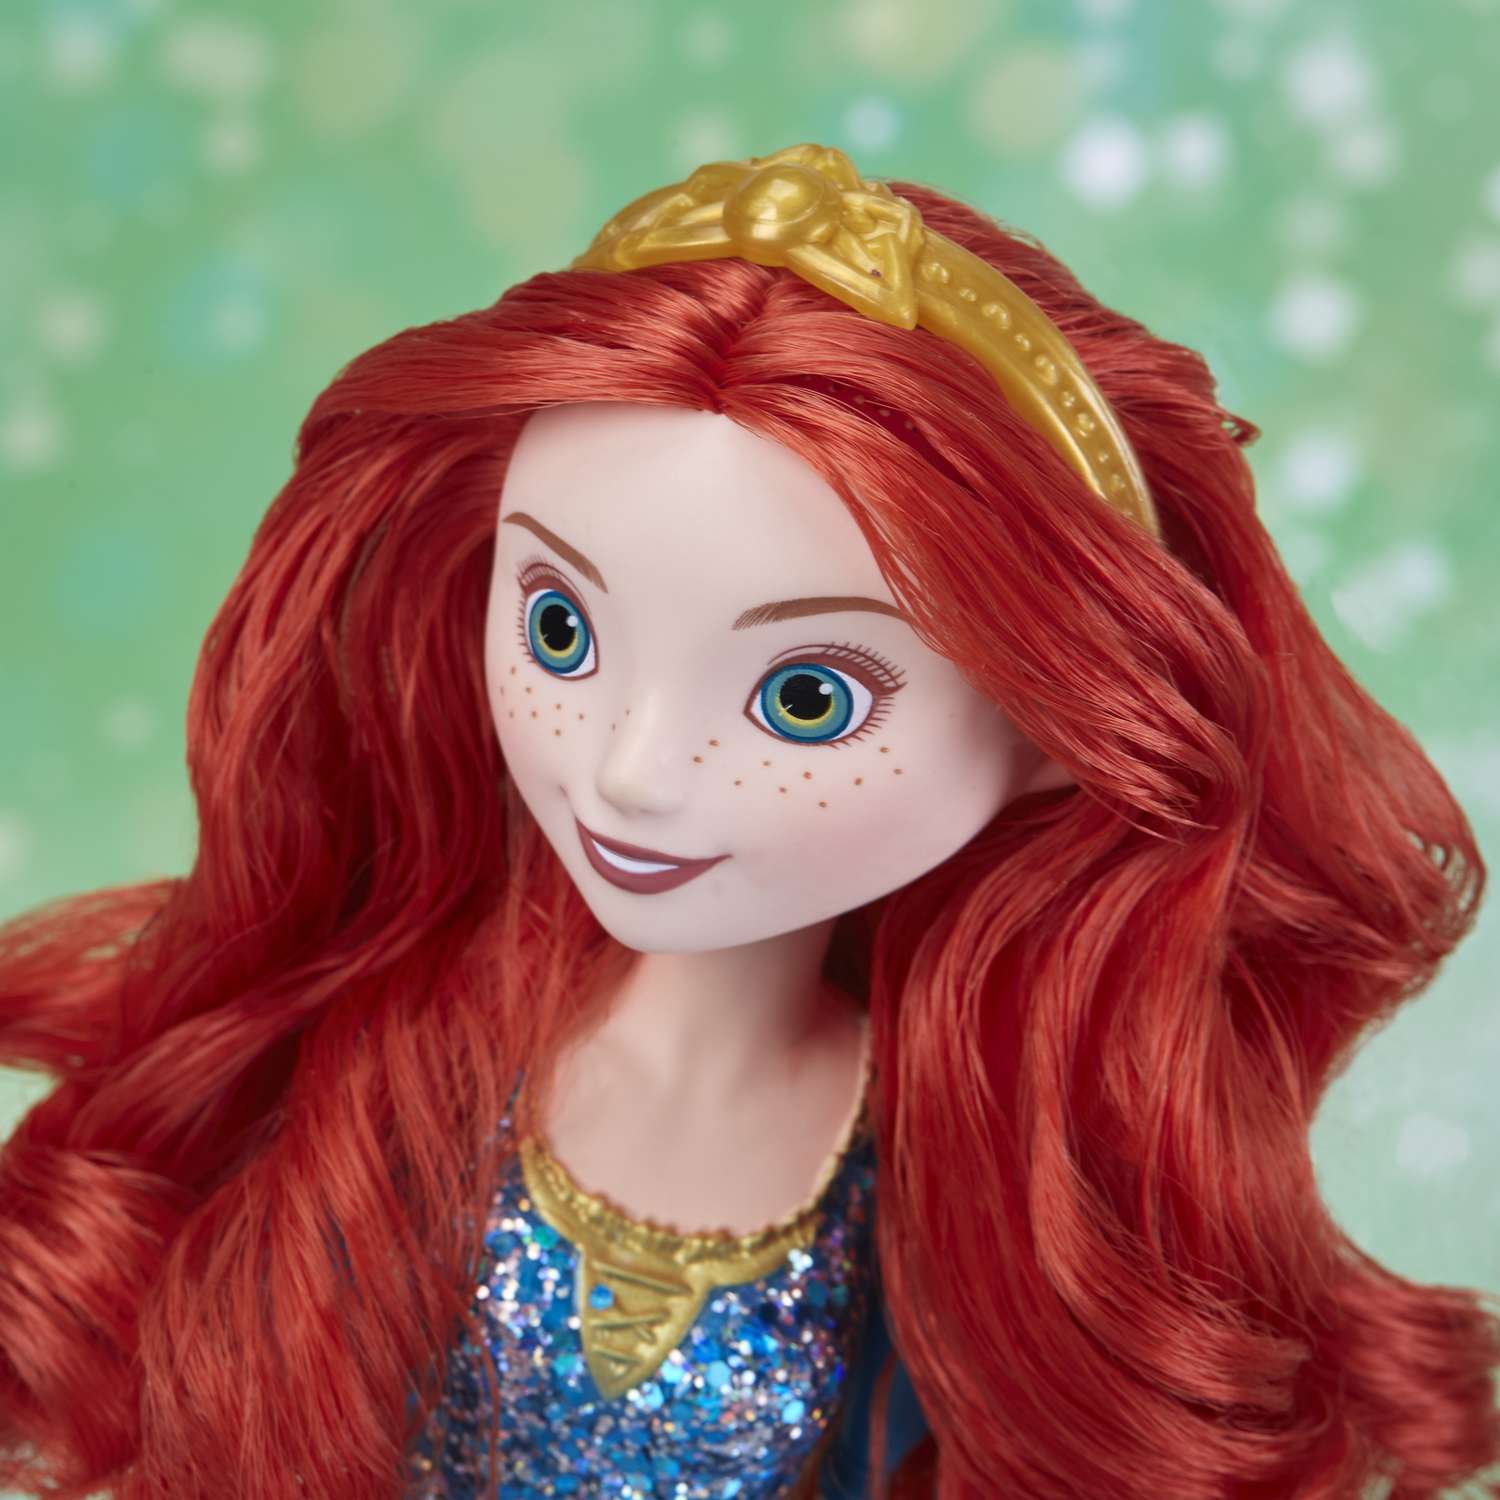 Кукла Disney Princess Hasbro C Мерида E4164EU4 E4022EU4 - фото 20